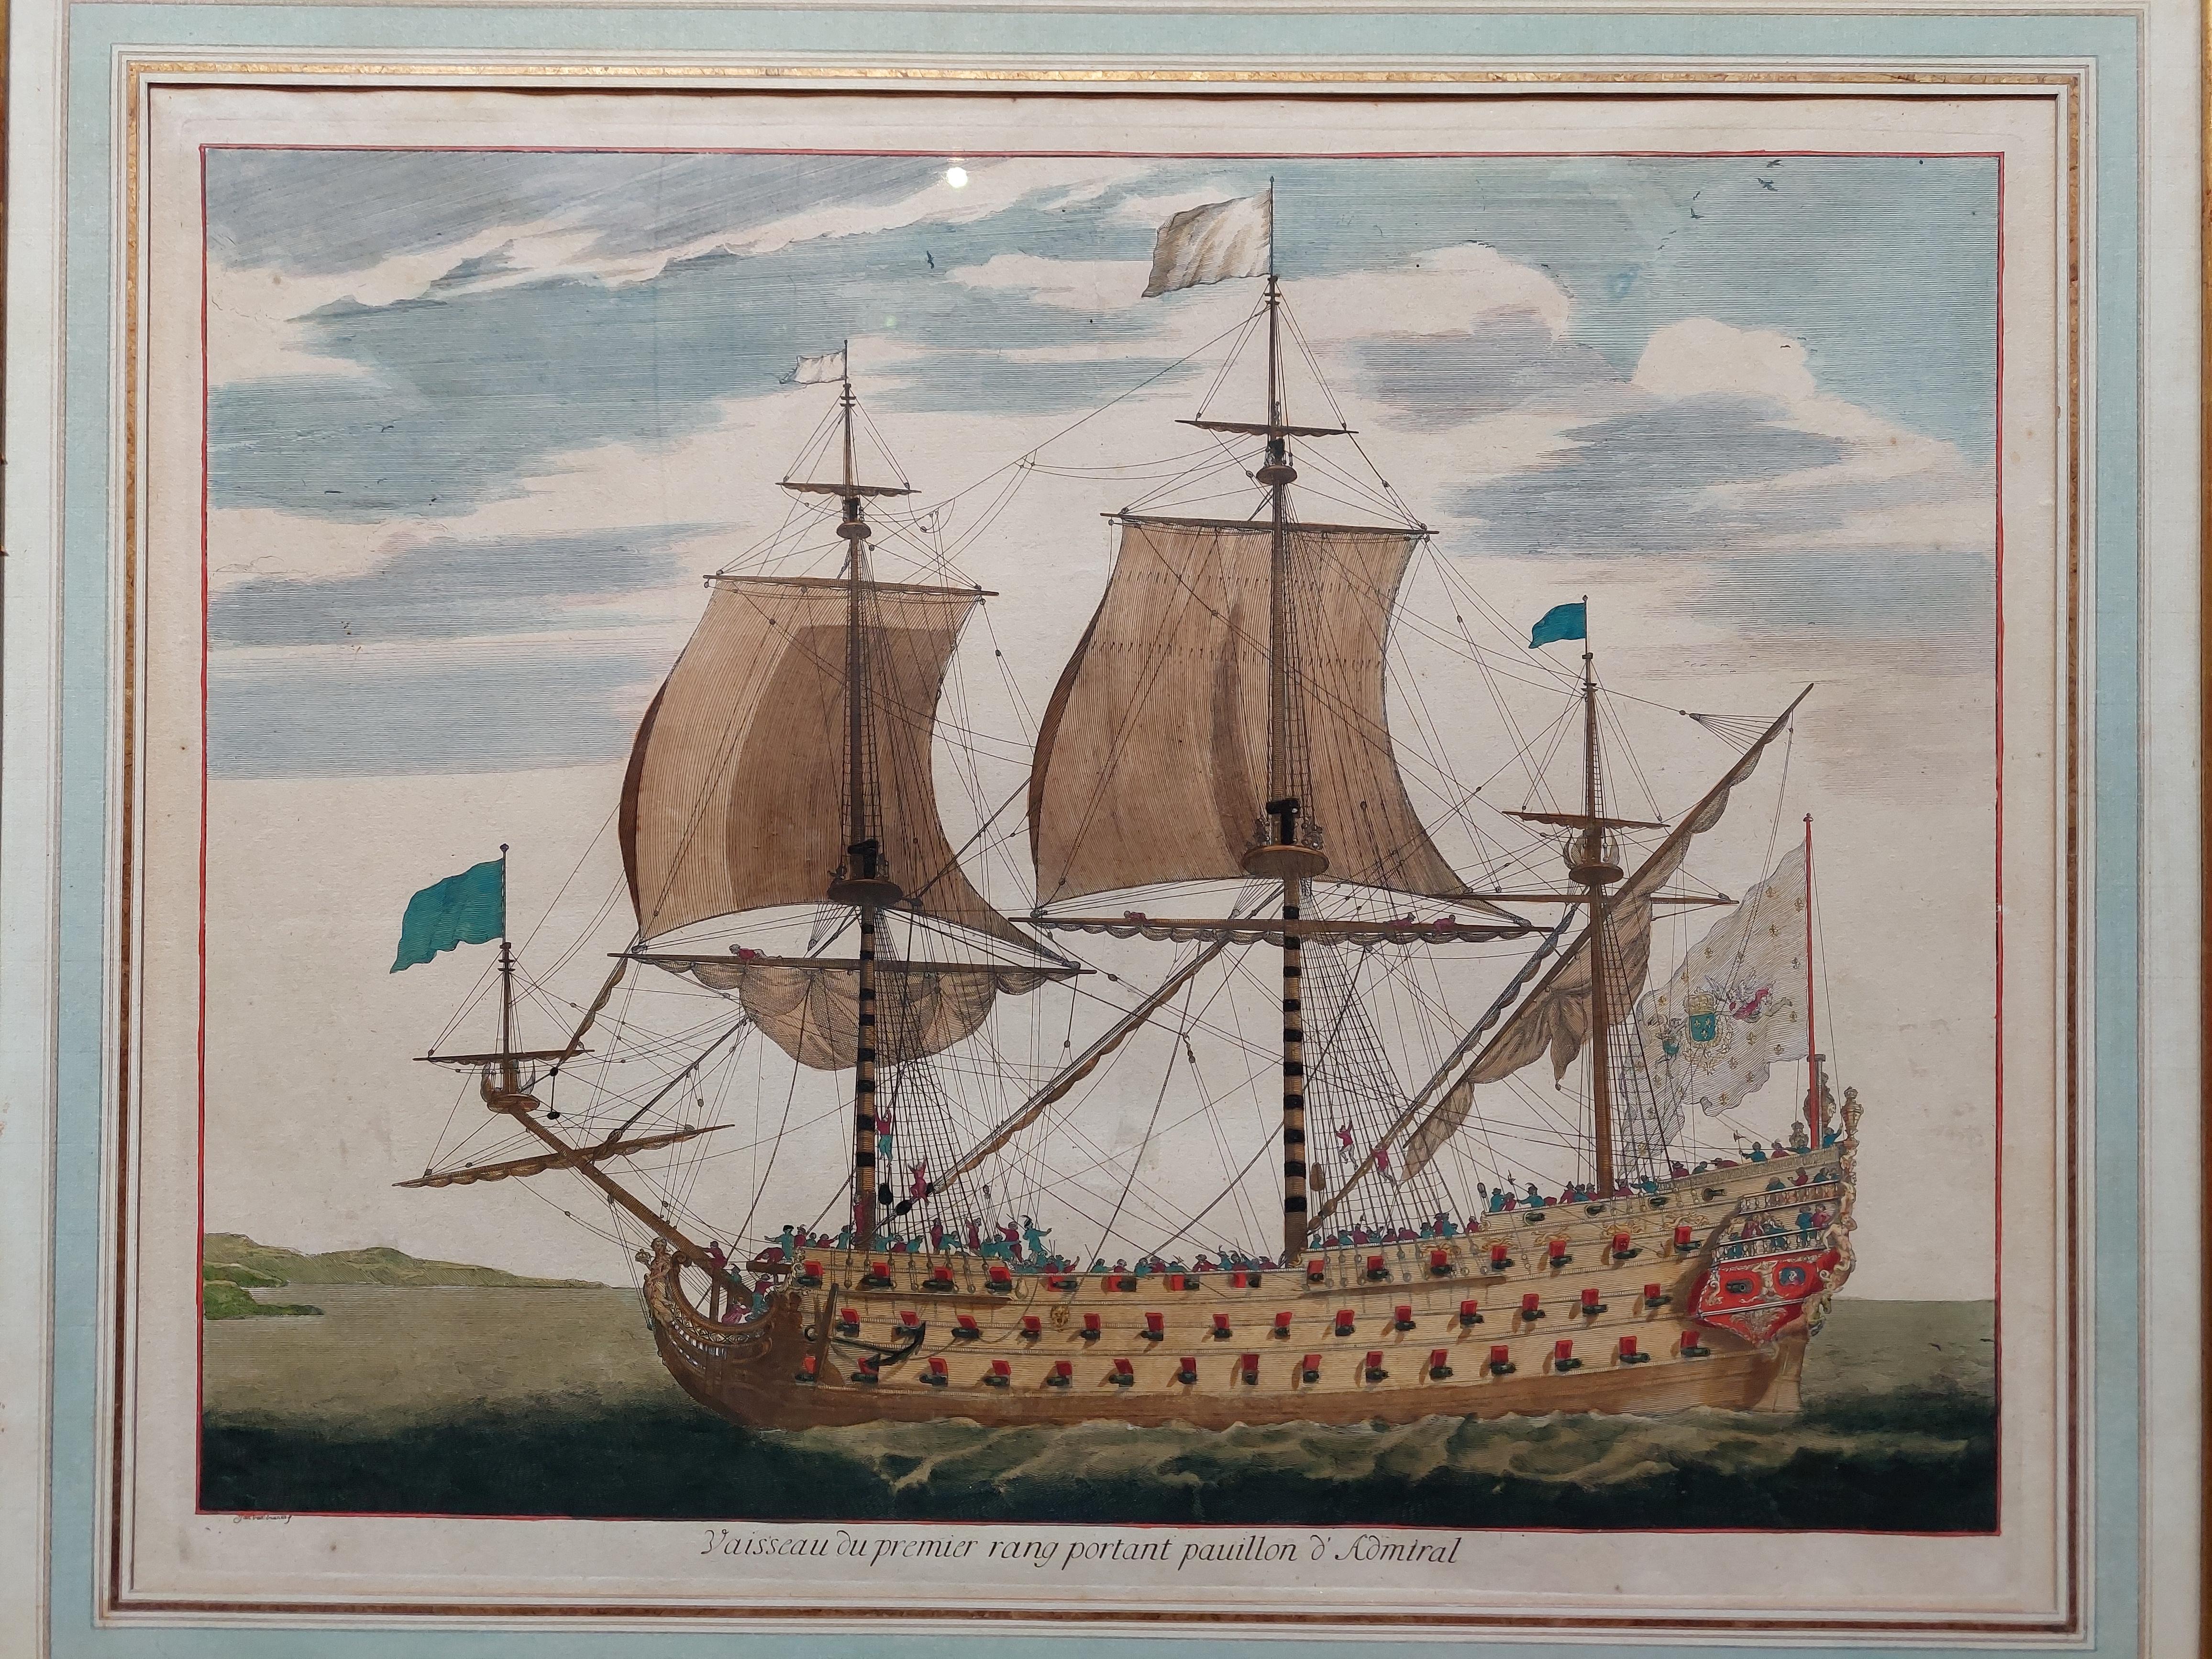 Antique print titled 'Vaisseau du premier rang portant pavillon d'Admiral'. Beautiful copper engraving of a naval vessel. From Mortier's famous maritime Atlas 